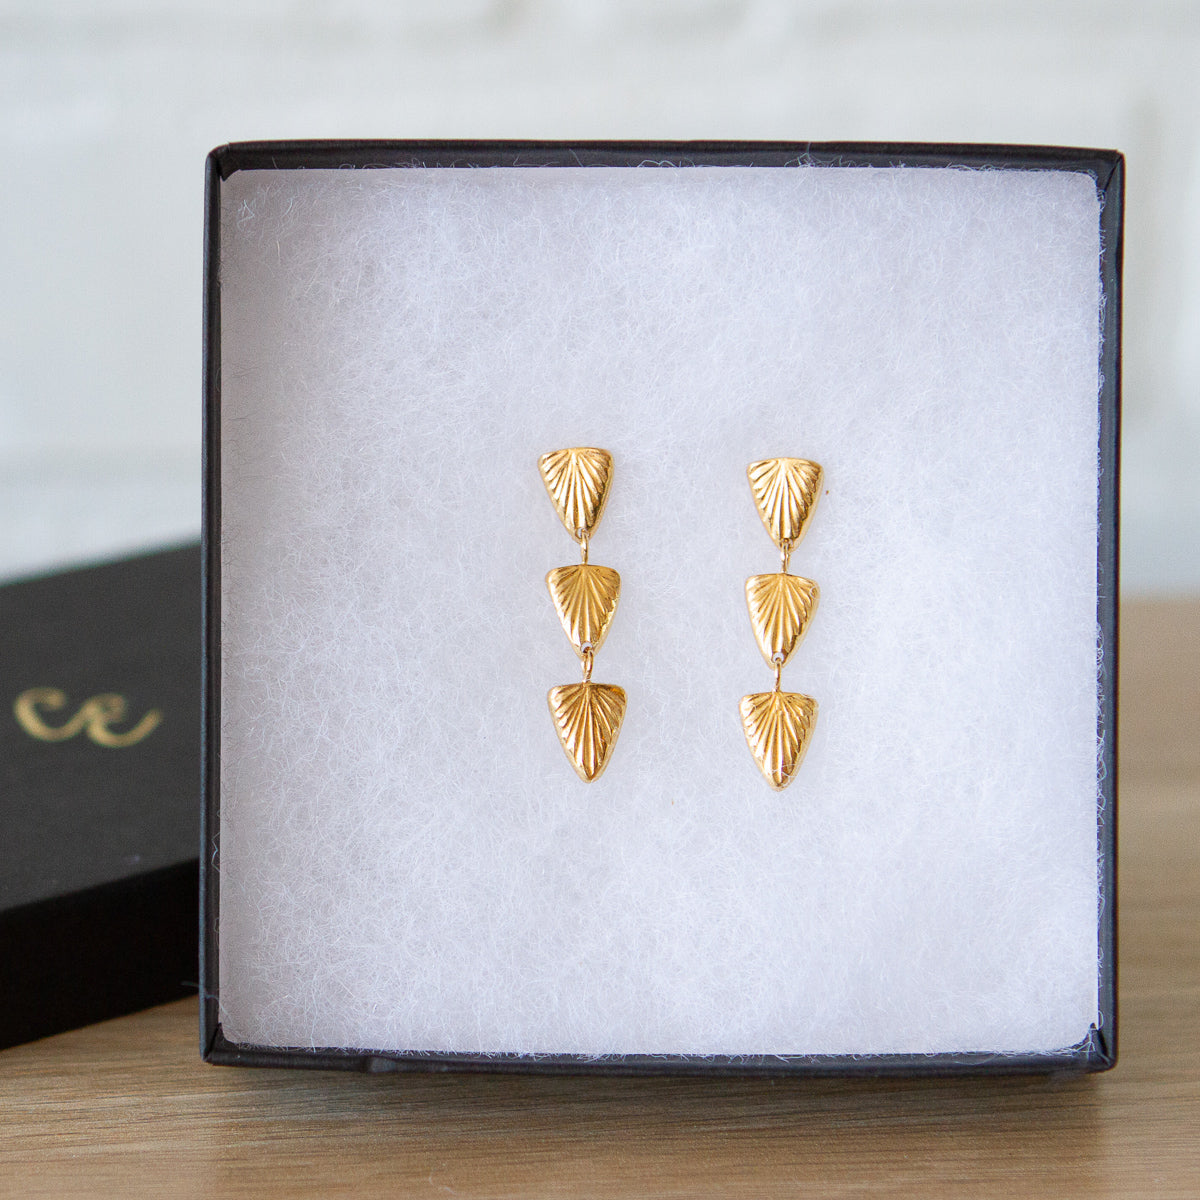 Flicker Vermeil Earrings by Corey Egan in a gift box